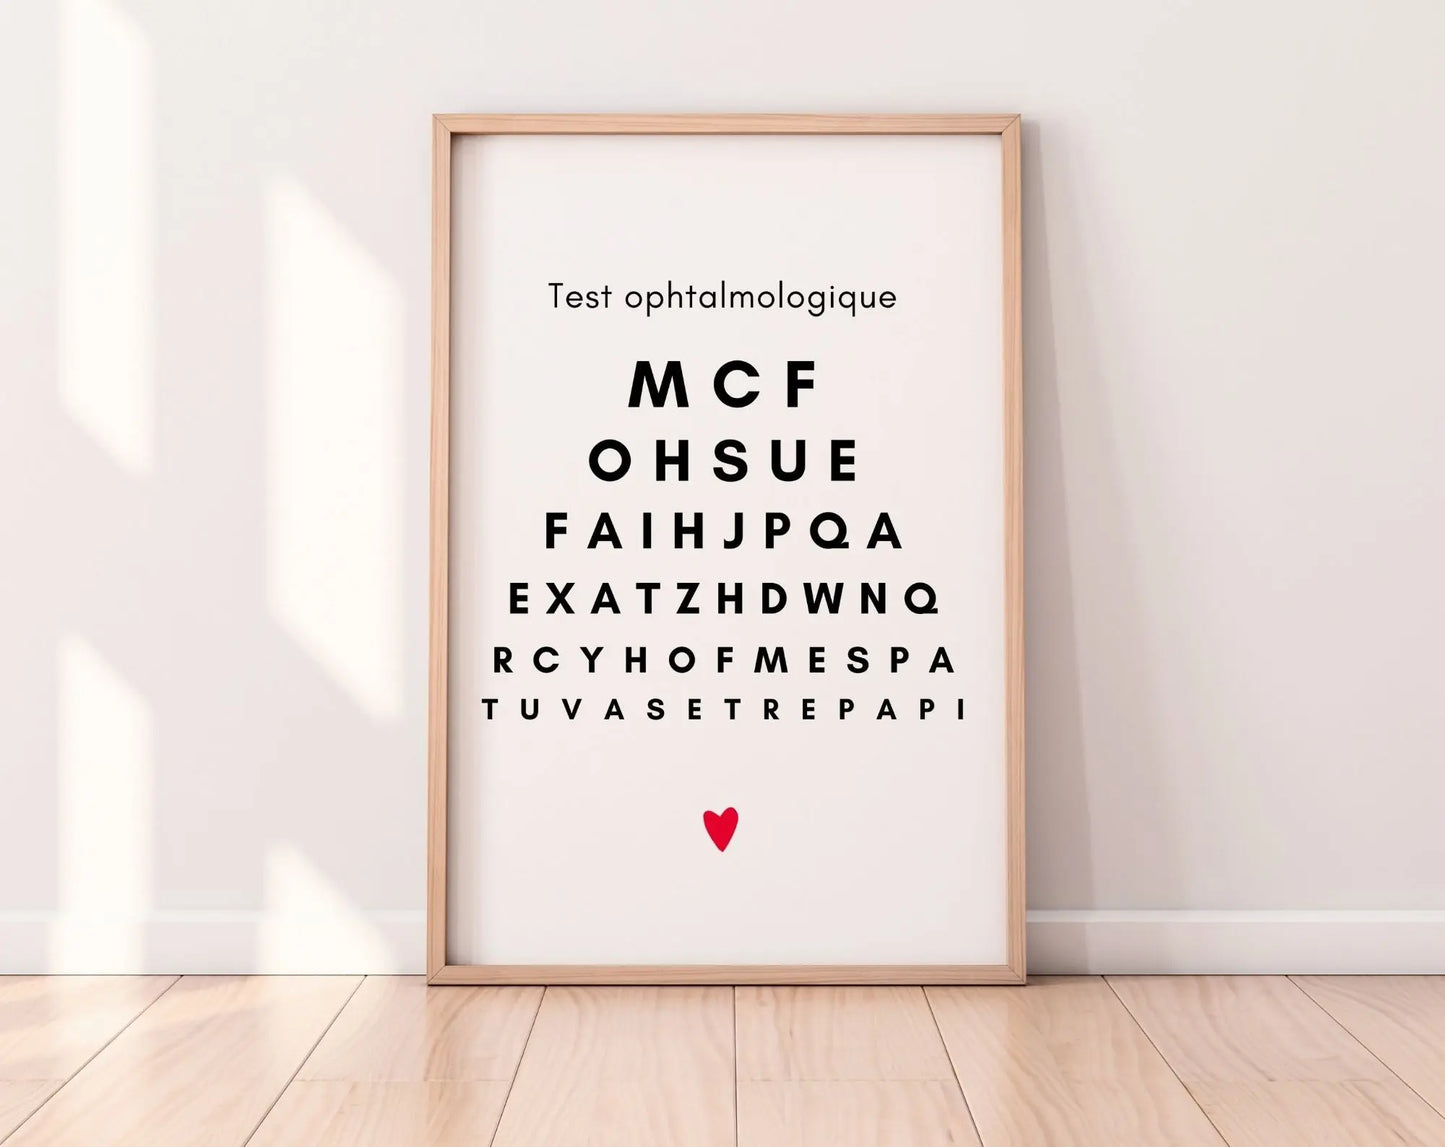 Tu vas être papi - Affiche test ophtalmologique - Annonce grossesse grand-père originale FLTMfrance